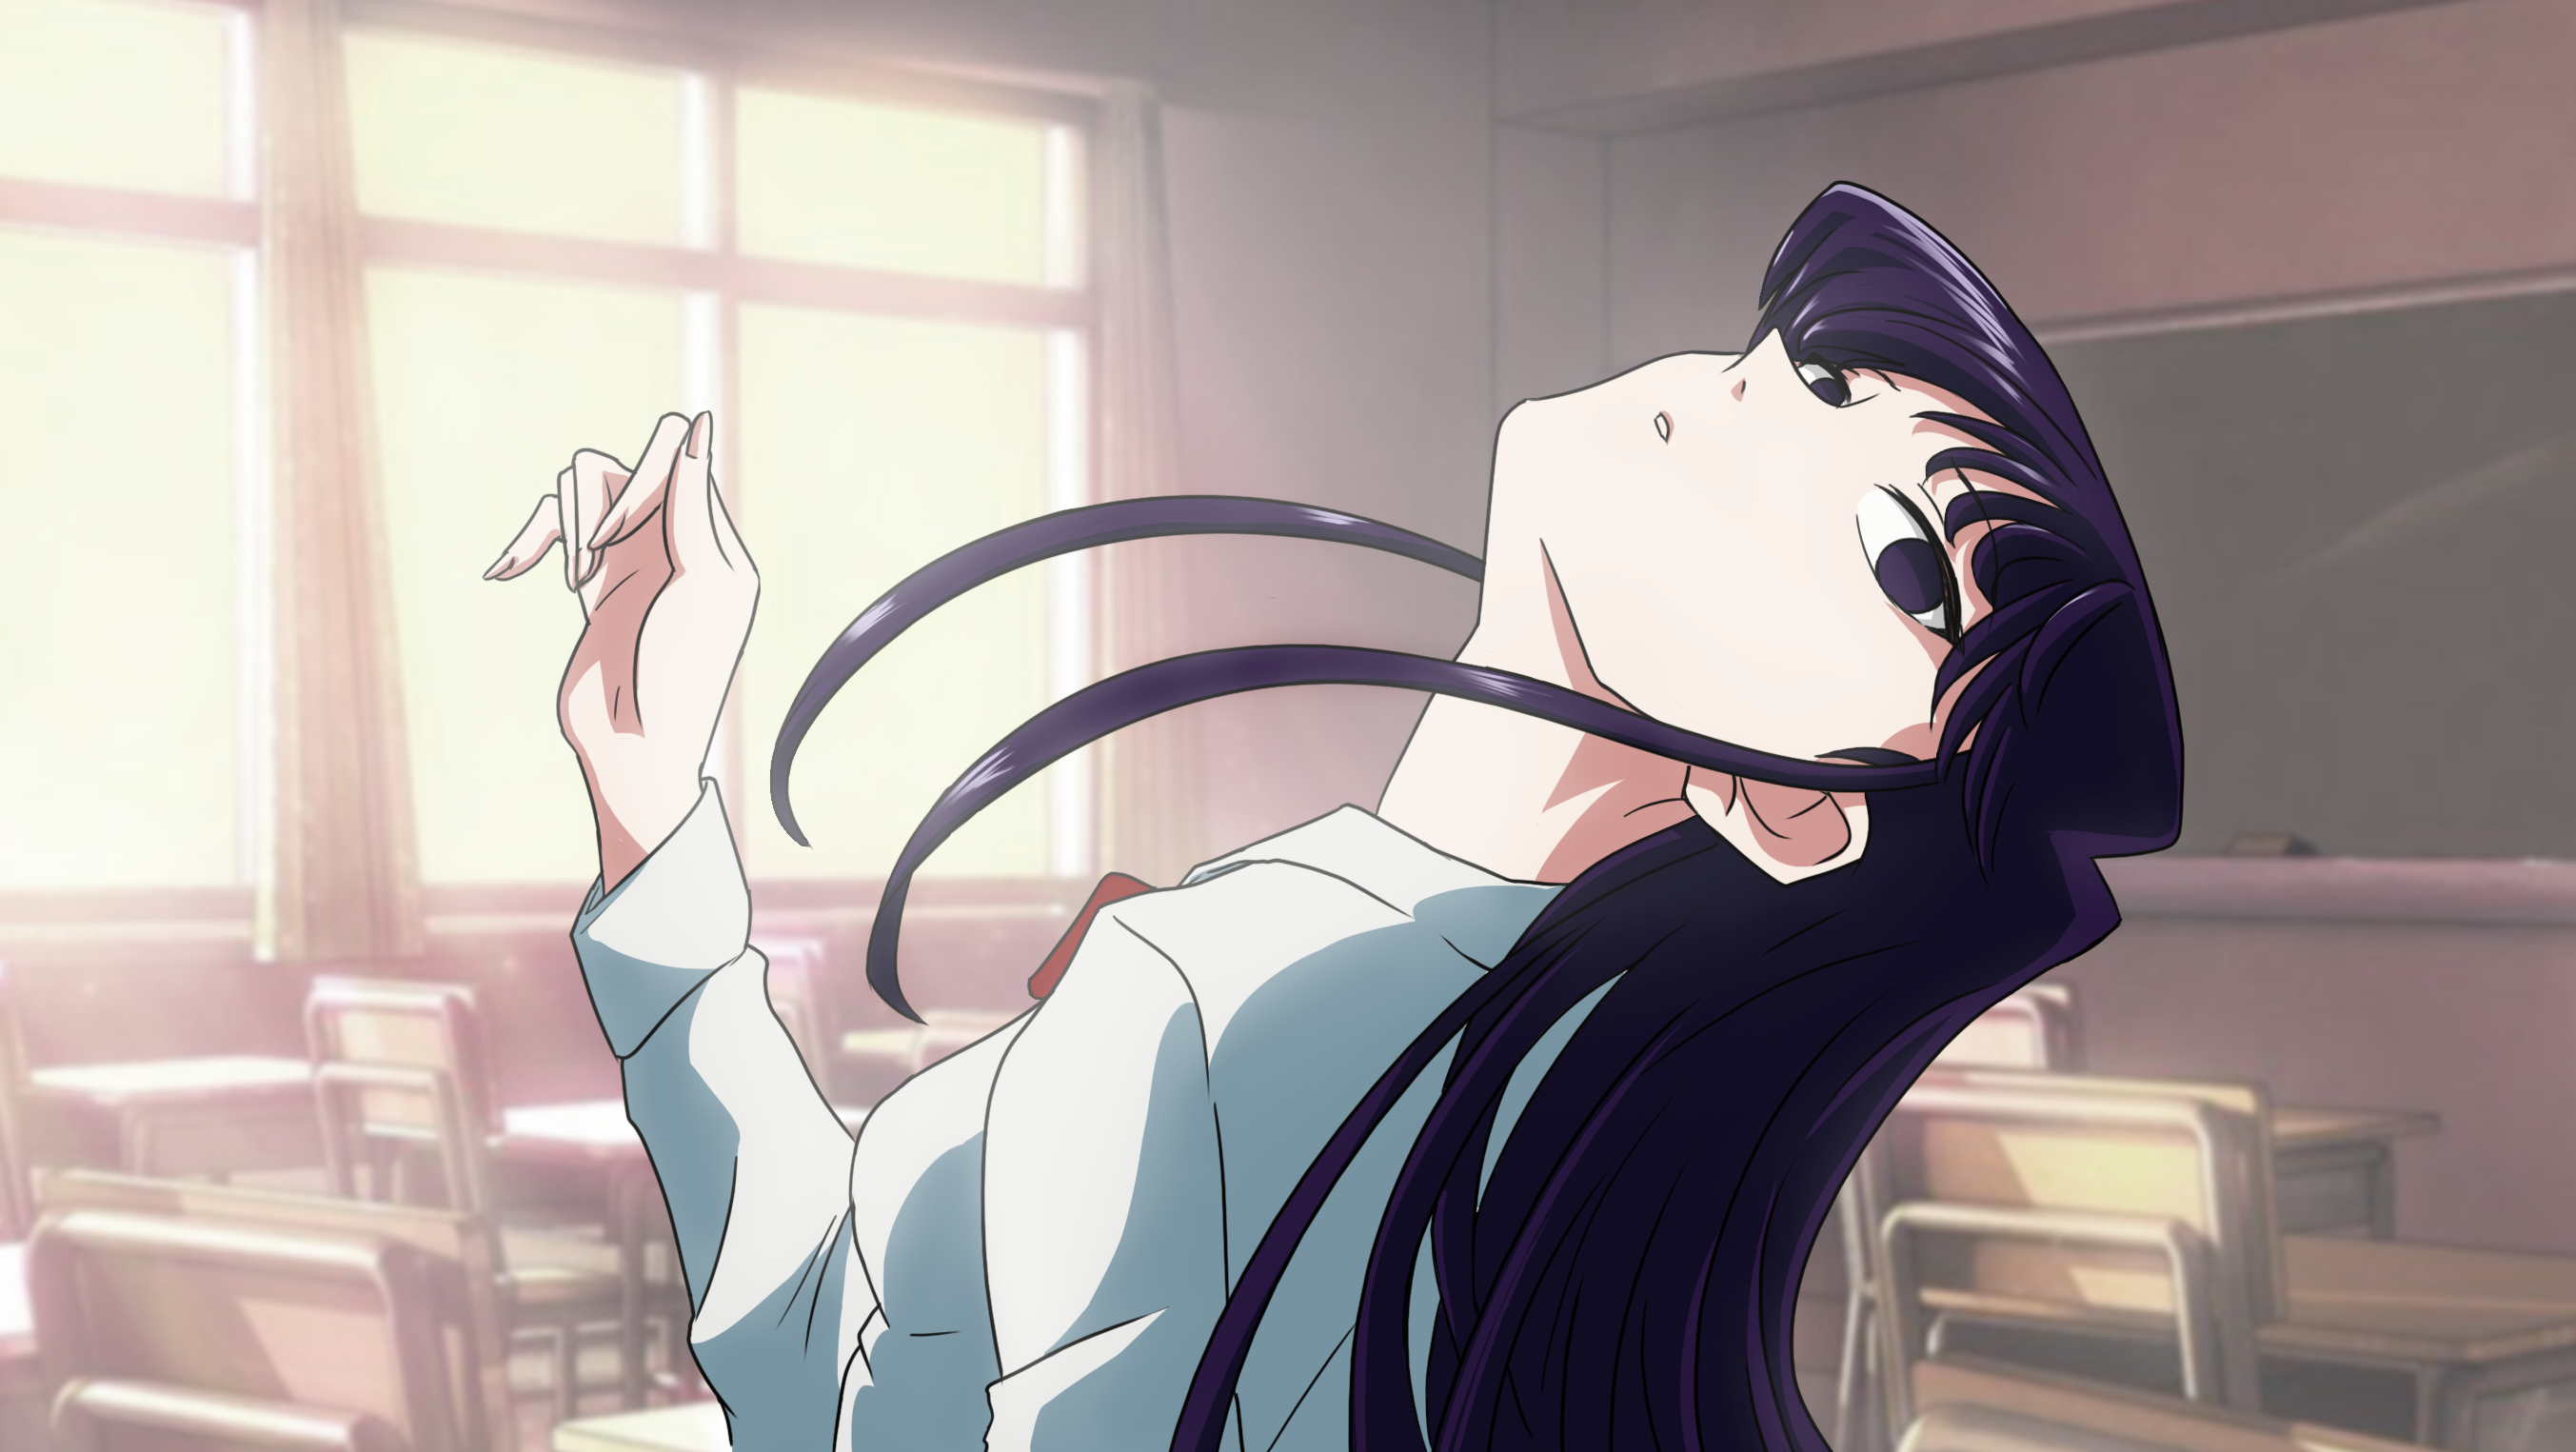 Anime 2706x1525 Komi-san wa, Comyushou desu. Monogatari Series school uniform JK long hair anime girls 2D Komi Shouko anime